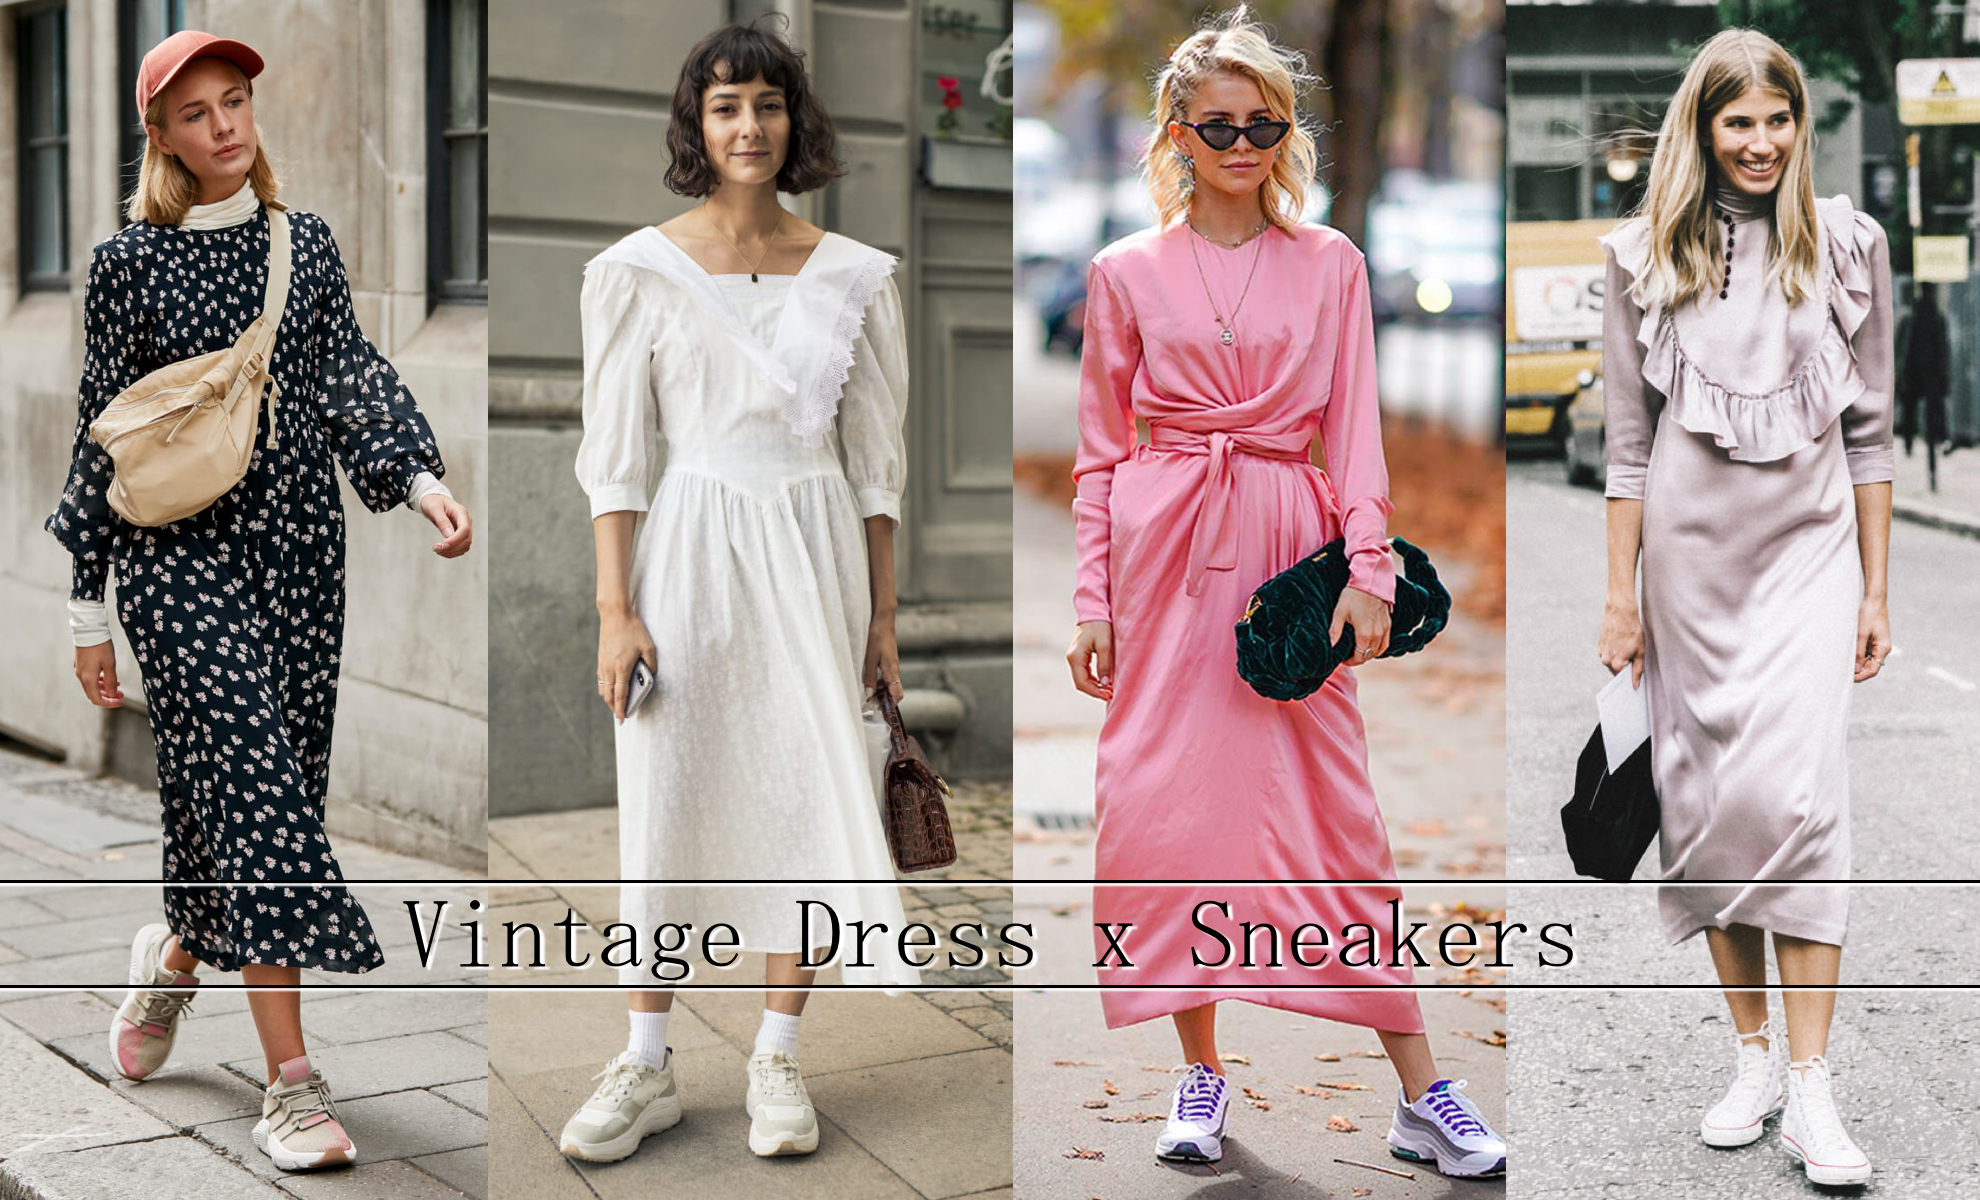 Vintage Dress X Sneakers สวยชิคแมทช์สบาย เป็นใครก็อยากแต่ง